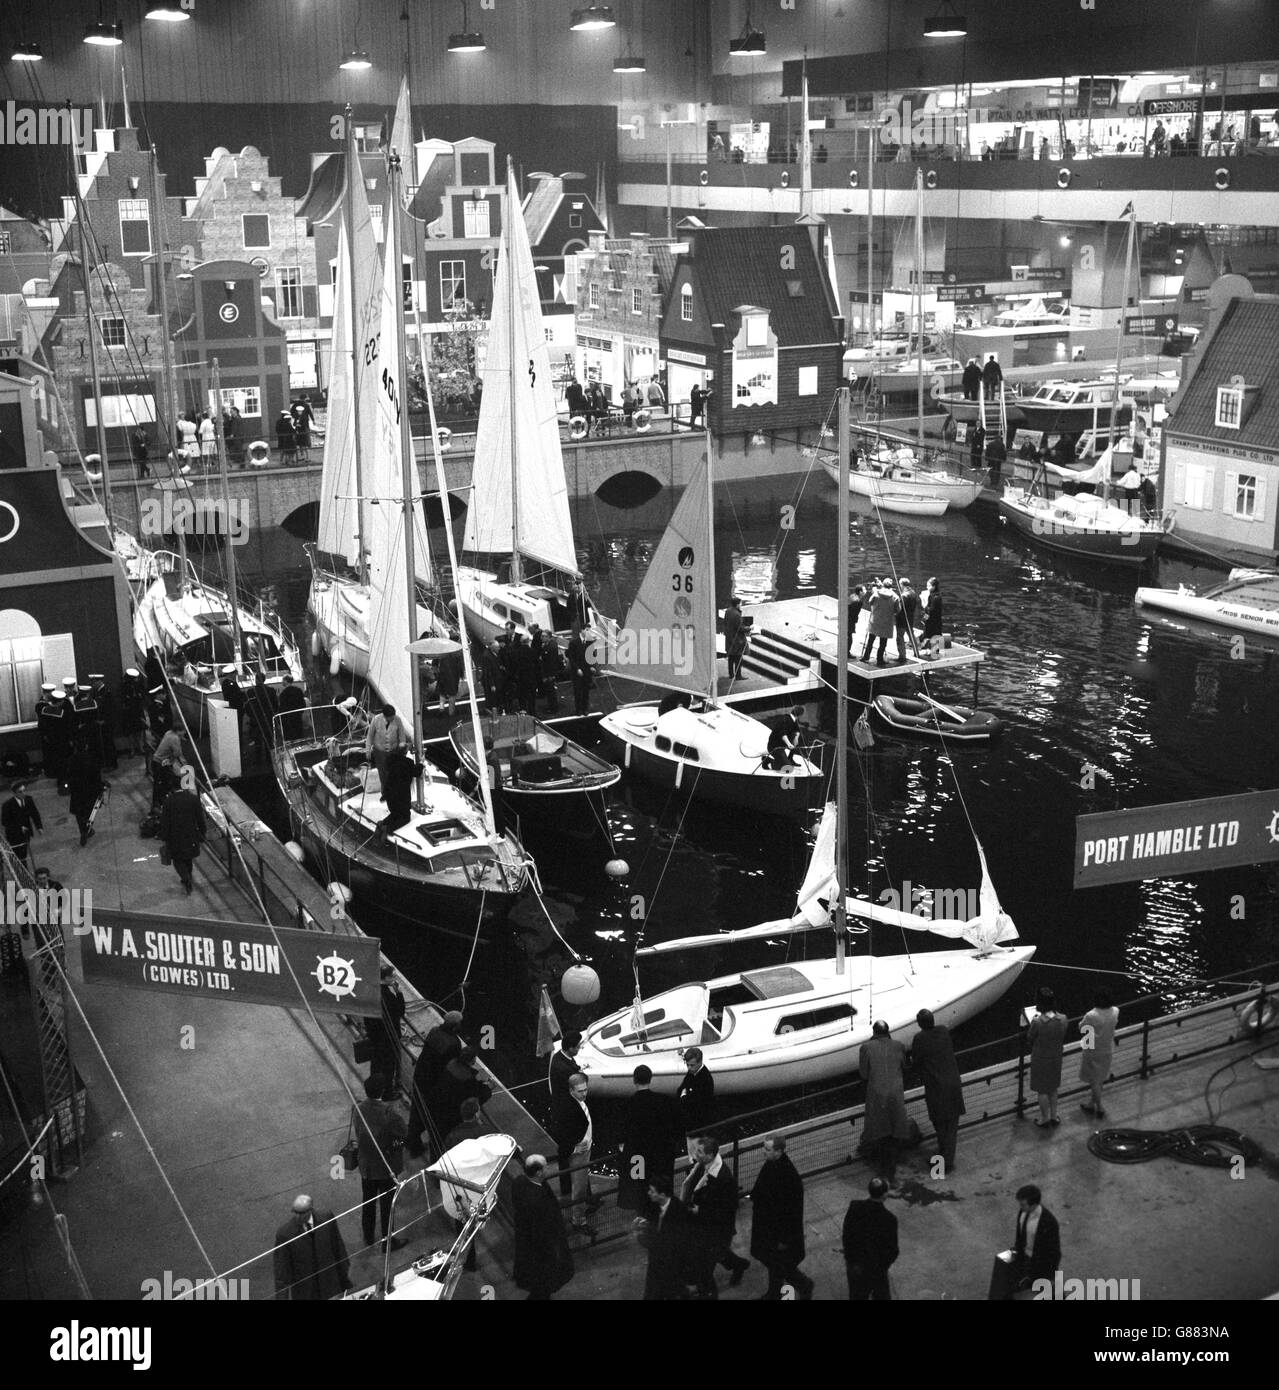 Una scena di Amsterdam con barche nel porto è il tema centrale creato a Earls Court, Londra, per l'International Boat Show. Imbarcazioni nel porto sono alcune di più di 600 barche che sono state inviate da 17 paesi per la mostra. Foto Stock